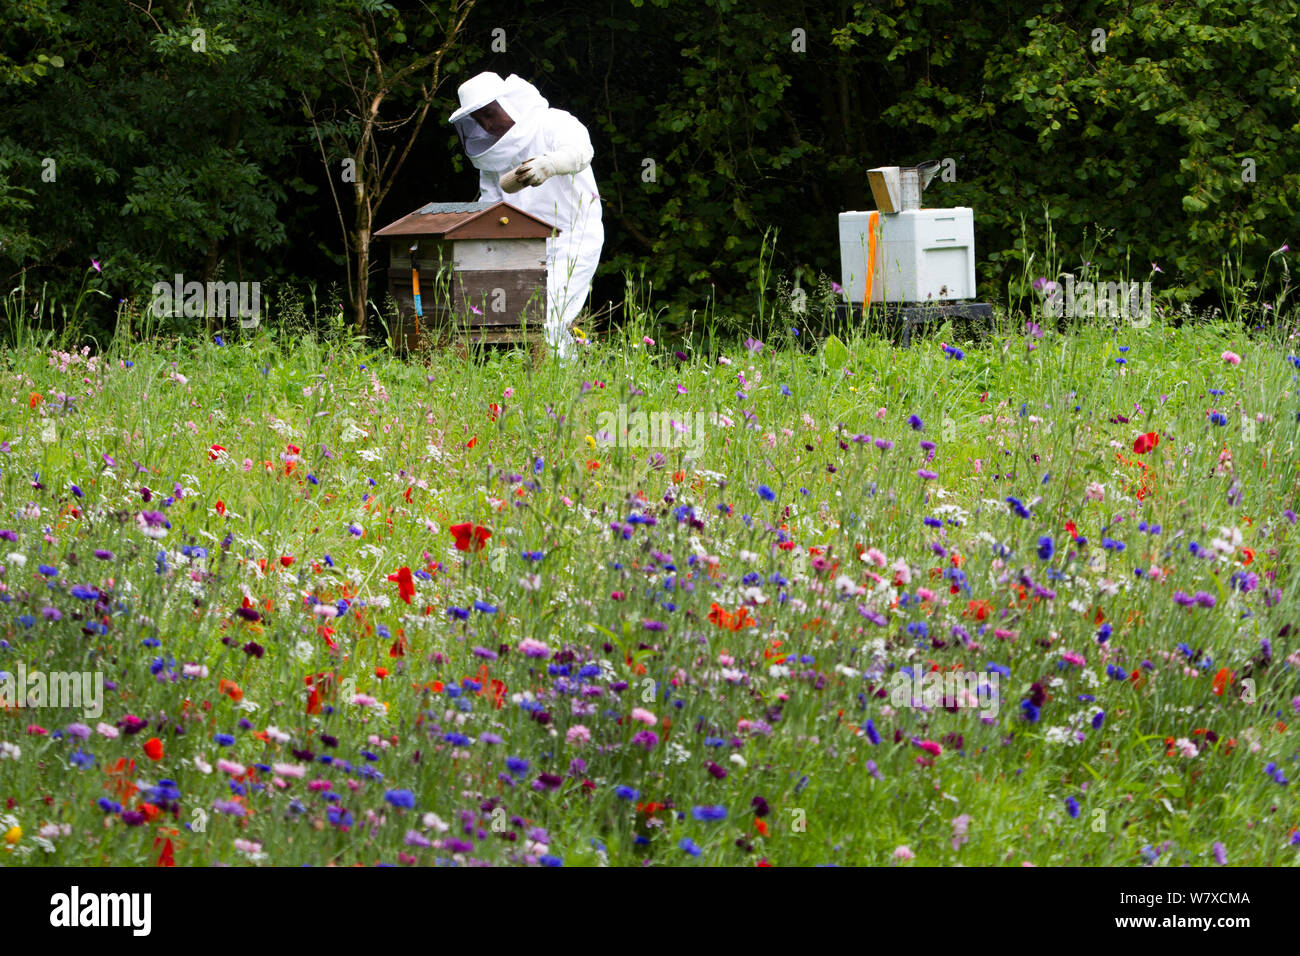 Russell Flynn von Gwent Imker schützende Imkerei Anzug, Teilnahme an Honig Biene (Apis Meliffera) Nesselsucht in Blumenwiese, Pontypool, Wales, UK, Juli 2014. Stockfoto